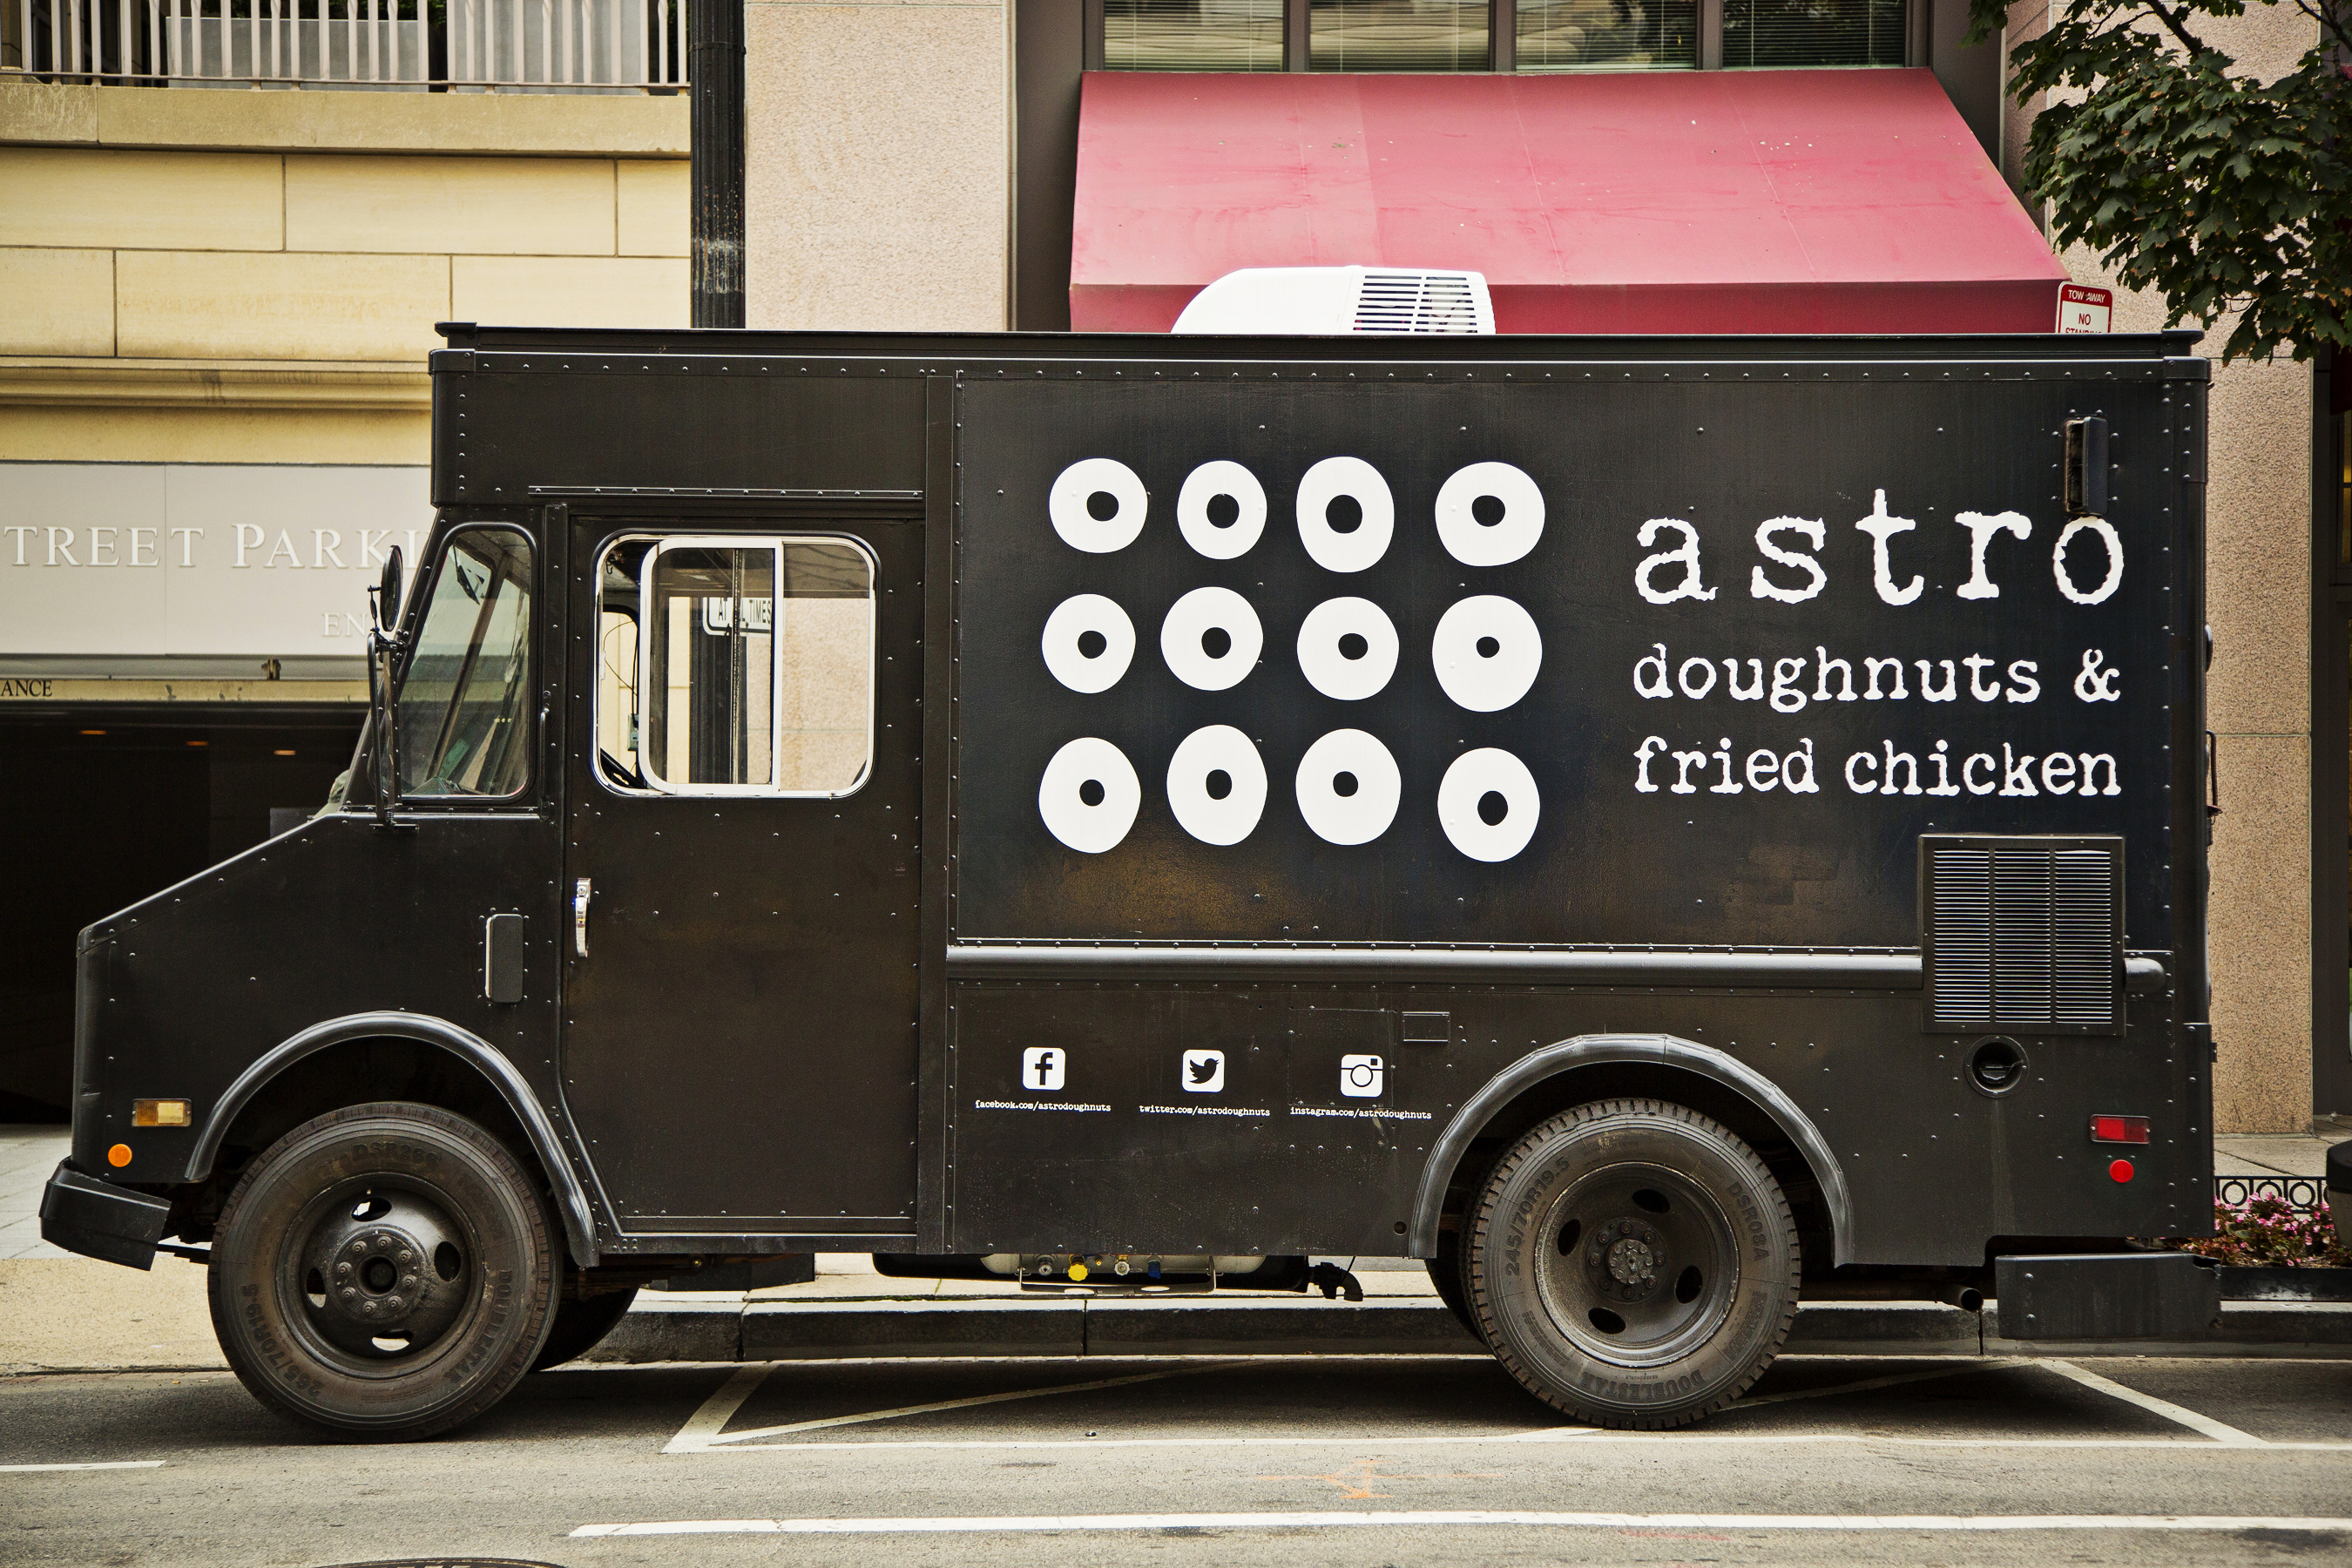 Astro's truck.